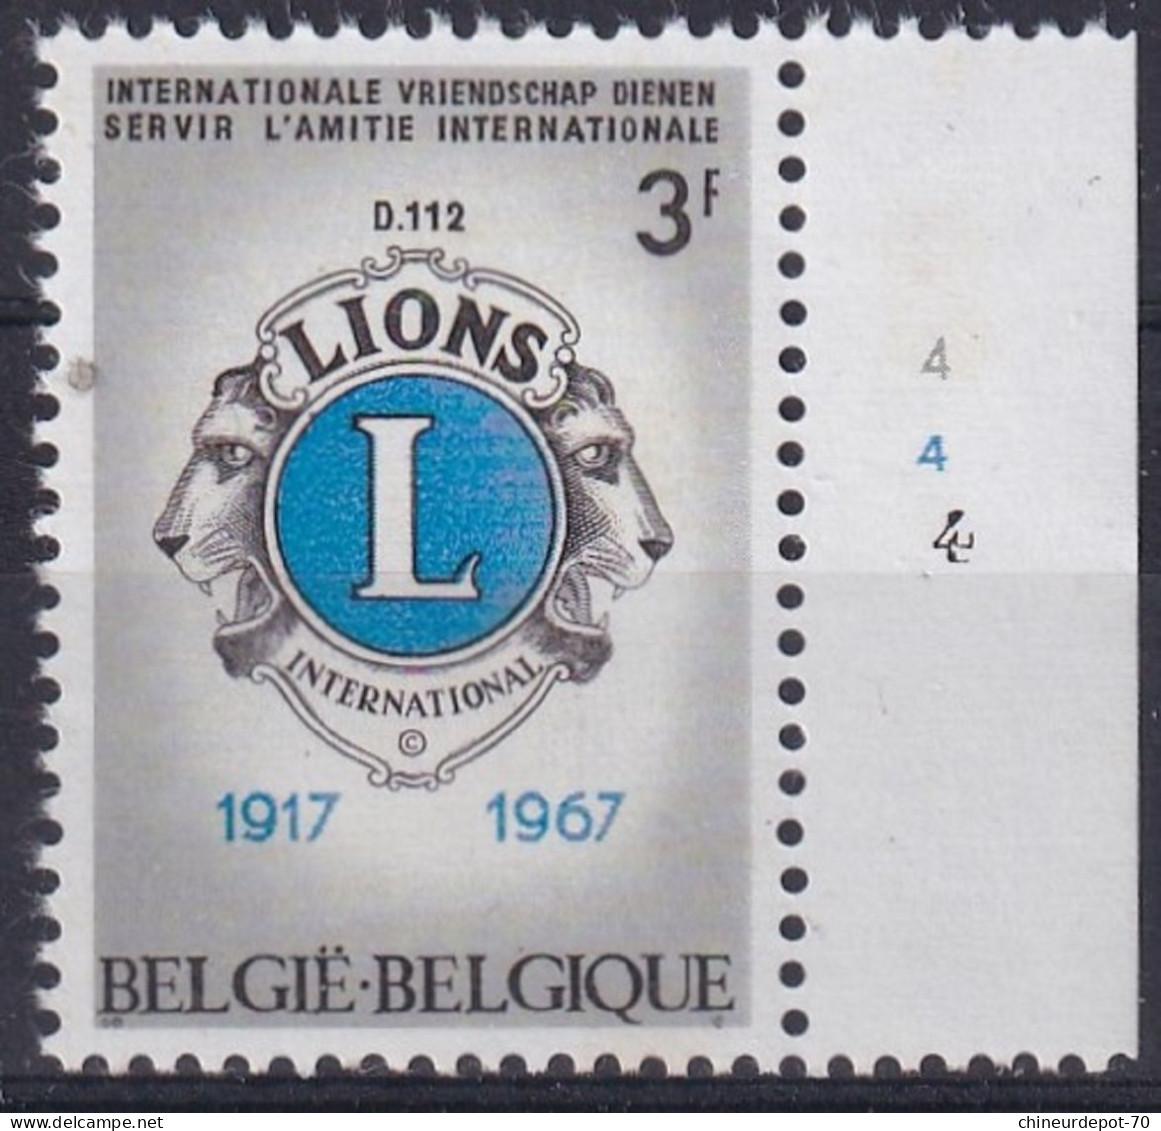 1967 LIONS INTERNATIONAL FRIENDSHIP SERVIR L’AMITIE INTERNATIONALE BORD DE FEUILLE - Datiert